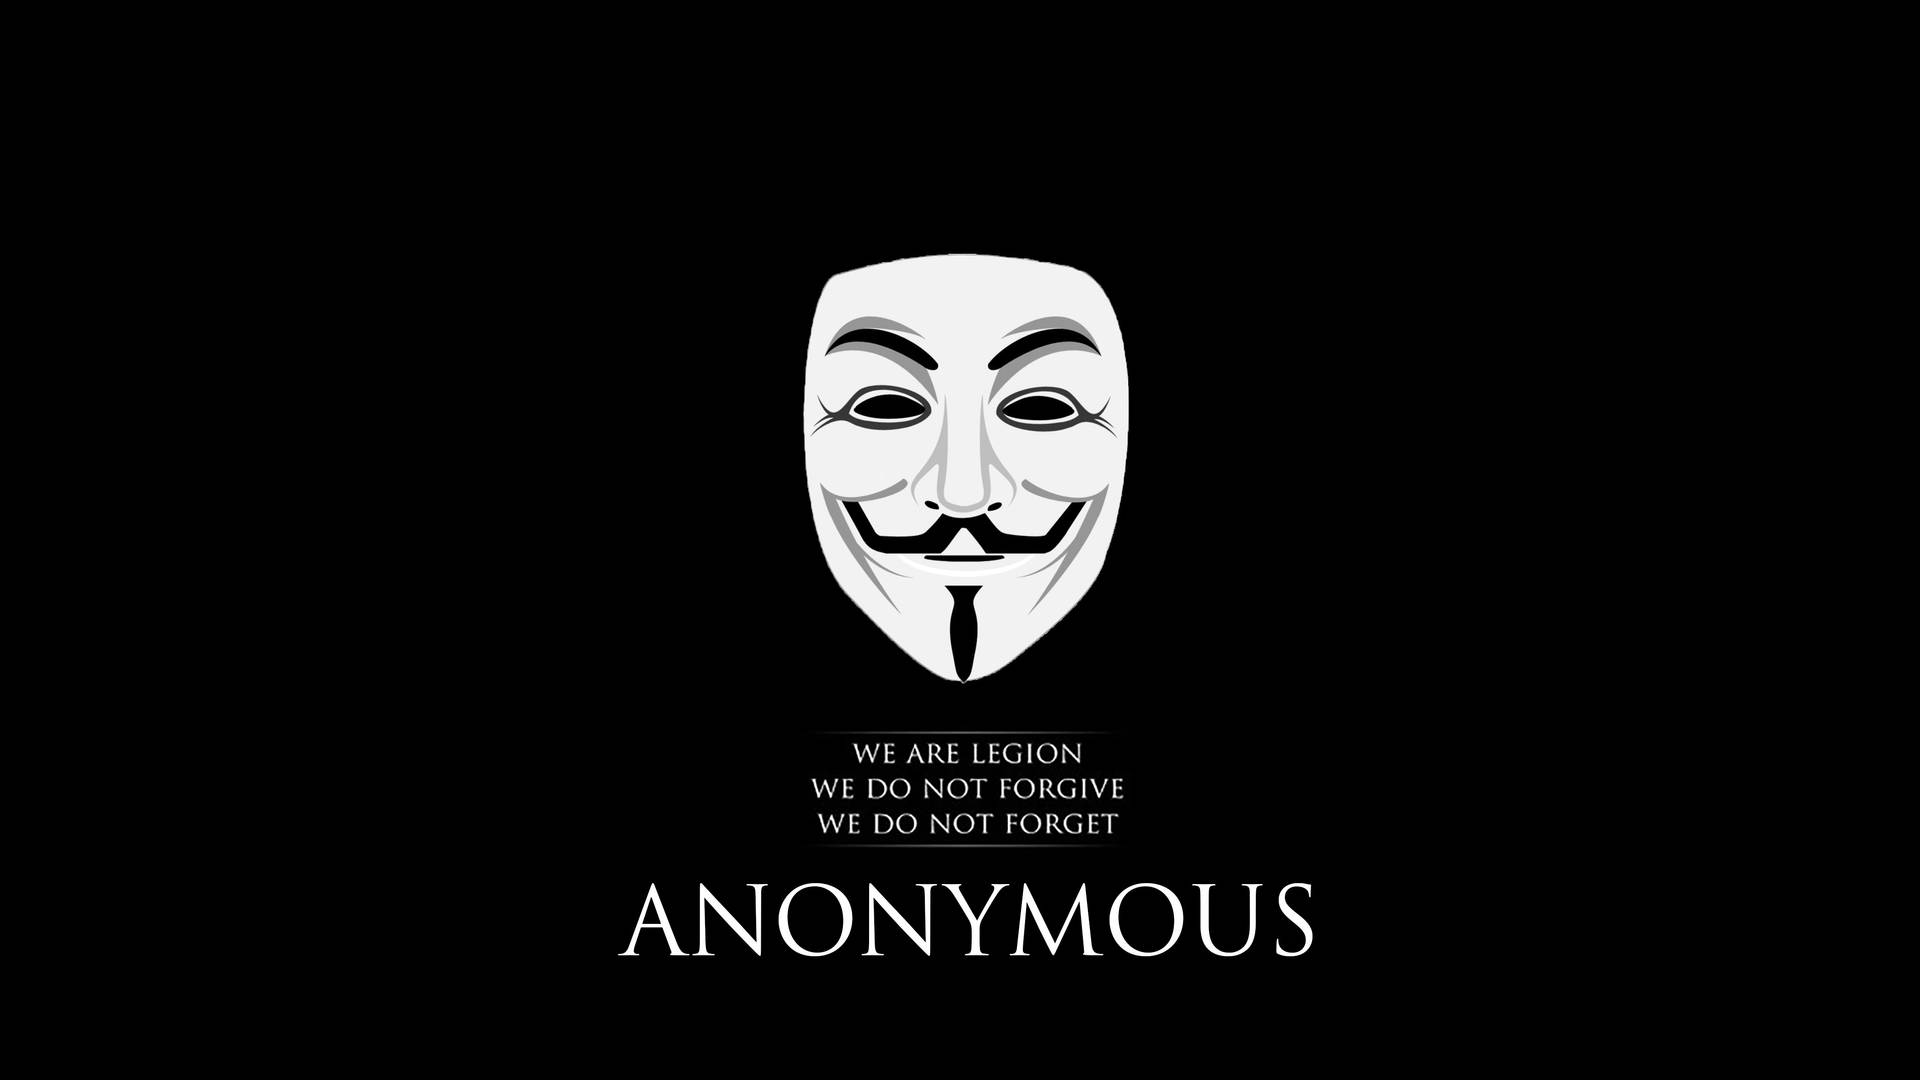 64kultra Hd Hacker Anonymous Maske Slogan Wallpaper